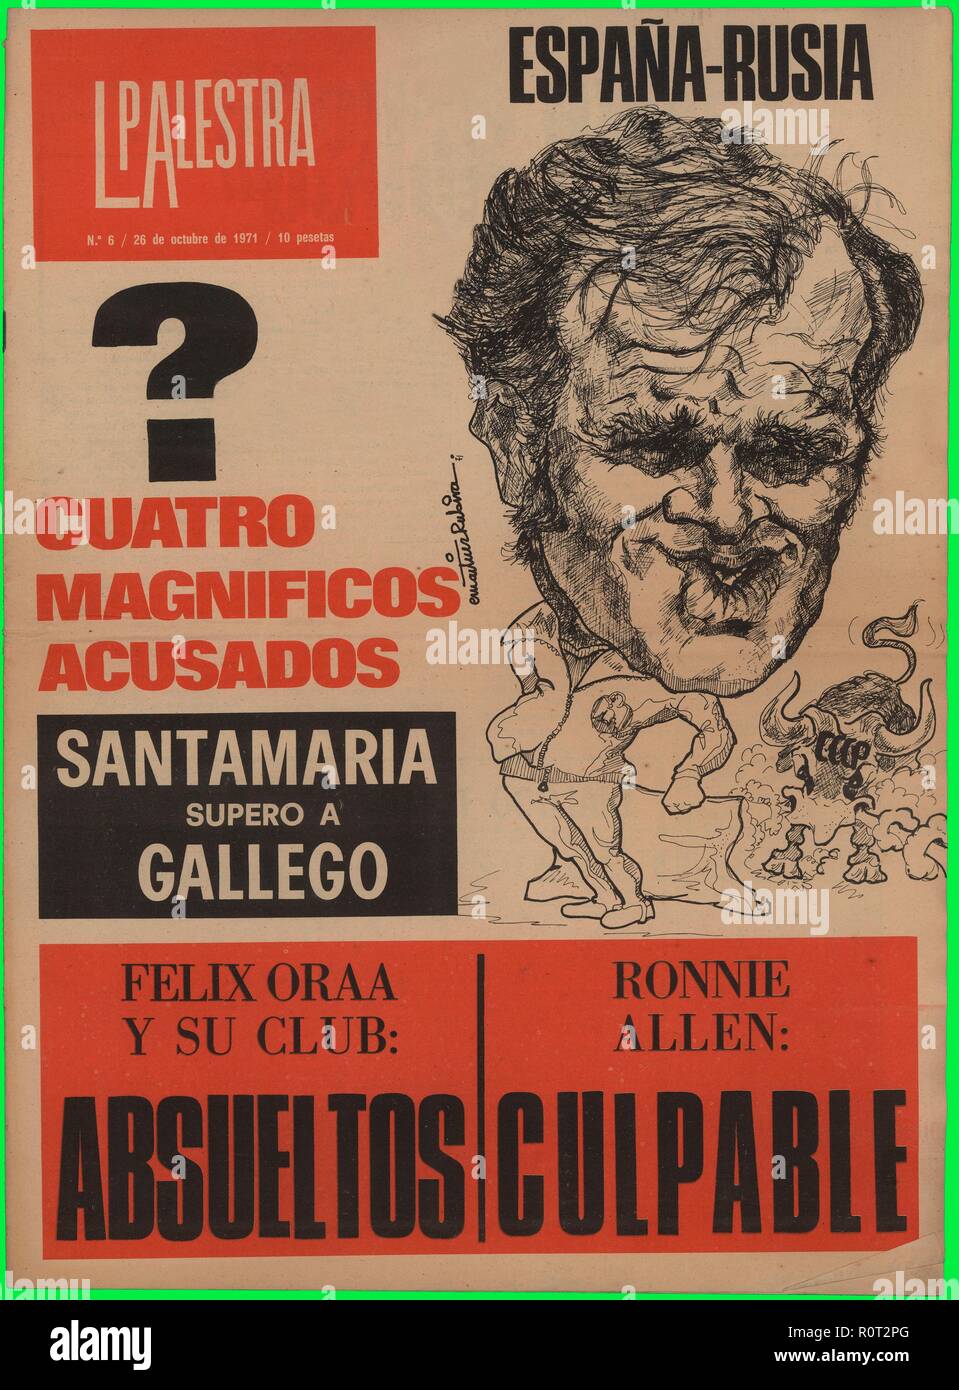 Portada de la revista de información deportiva La Palestra, editada en Madrid, octubre de 1971. Stock Photo